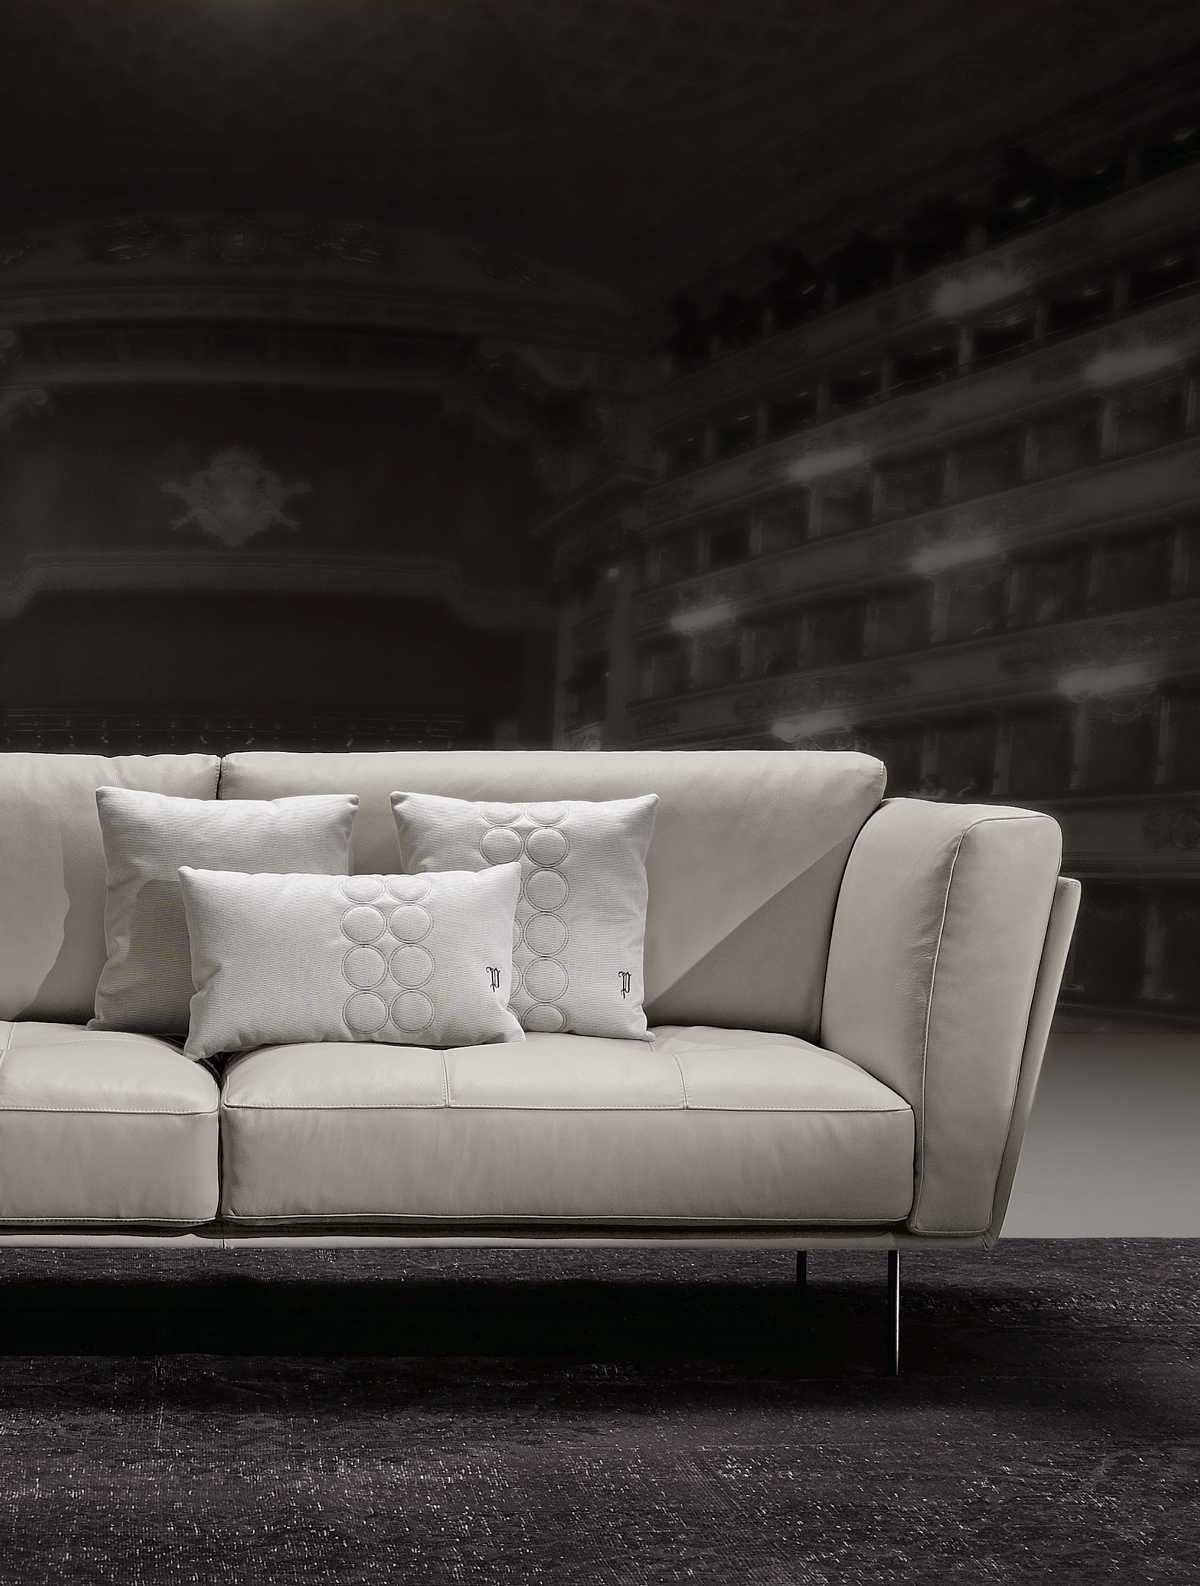 Beige, Made JVmoebel Couch Sofa Sitzer 3 Europe Modern Sofas Luxus Couches Weiß in Sofa Gepolstert Stoff